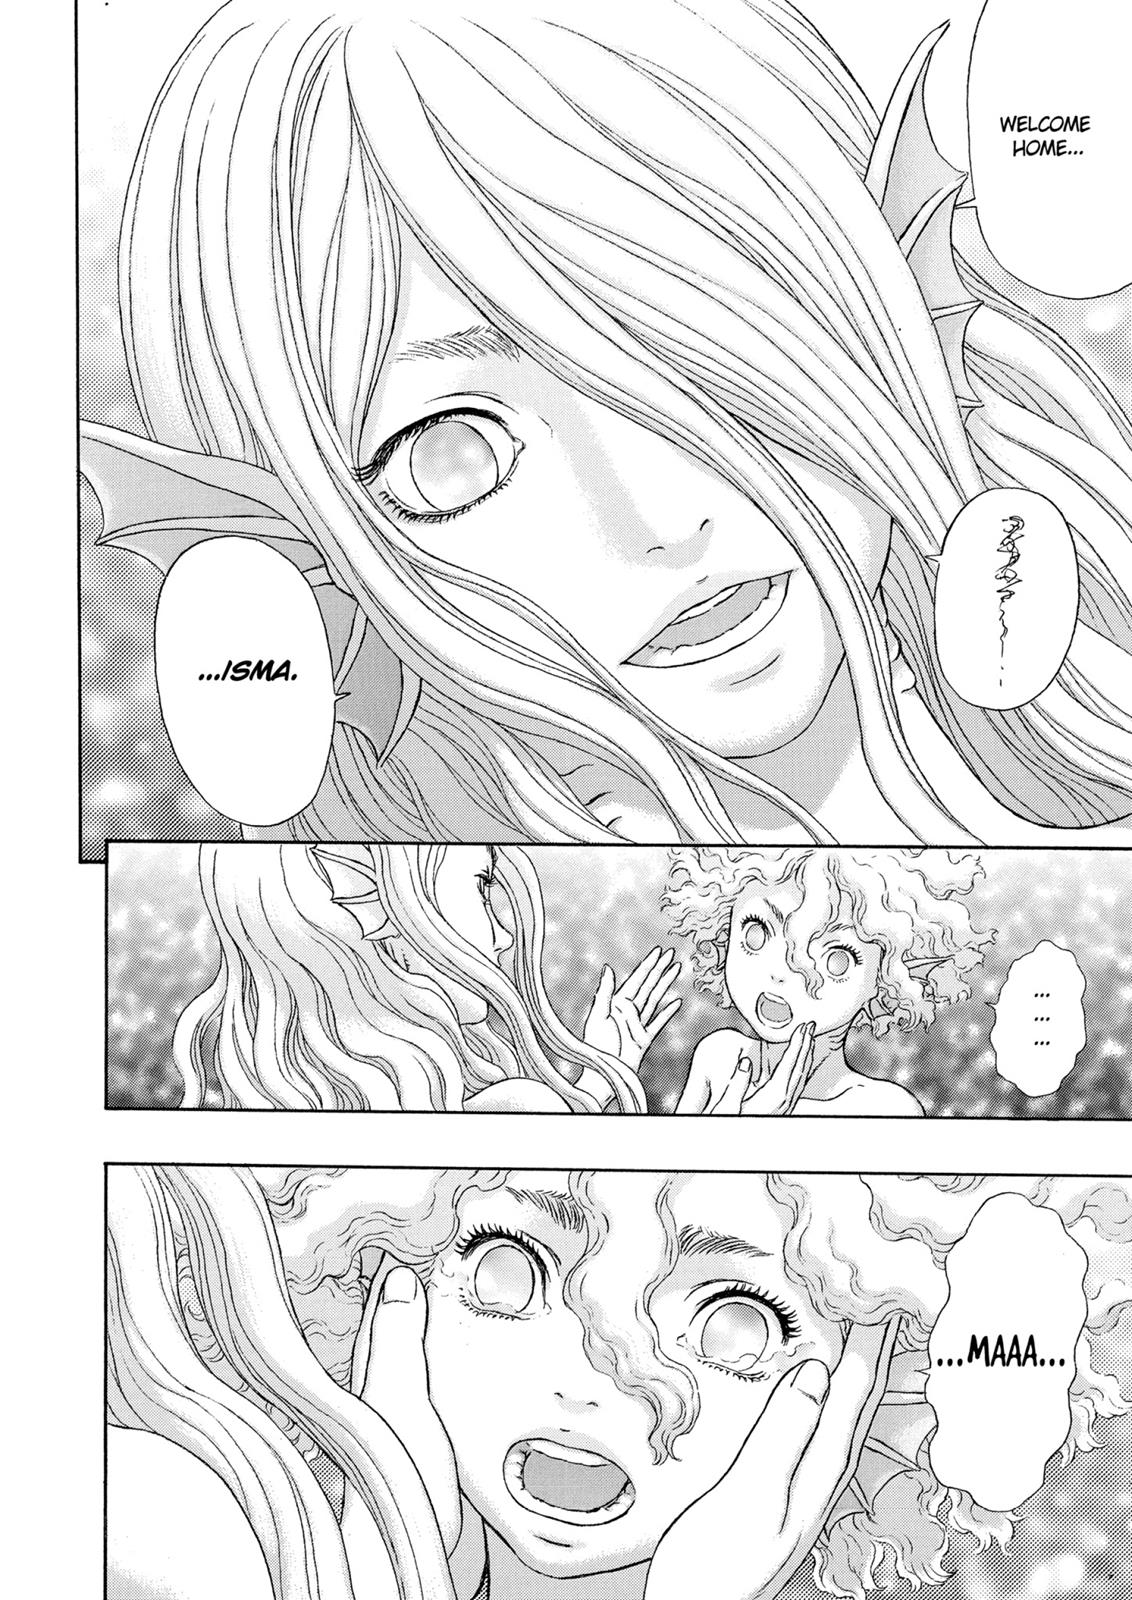 Berserk Manga Chapter 325 image 19